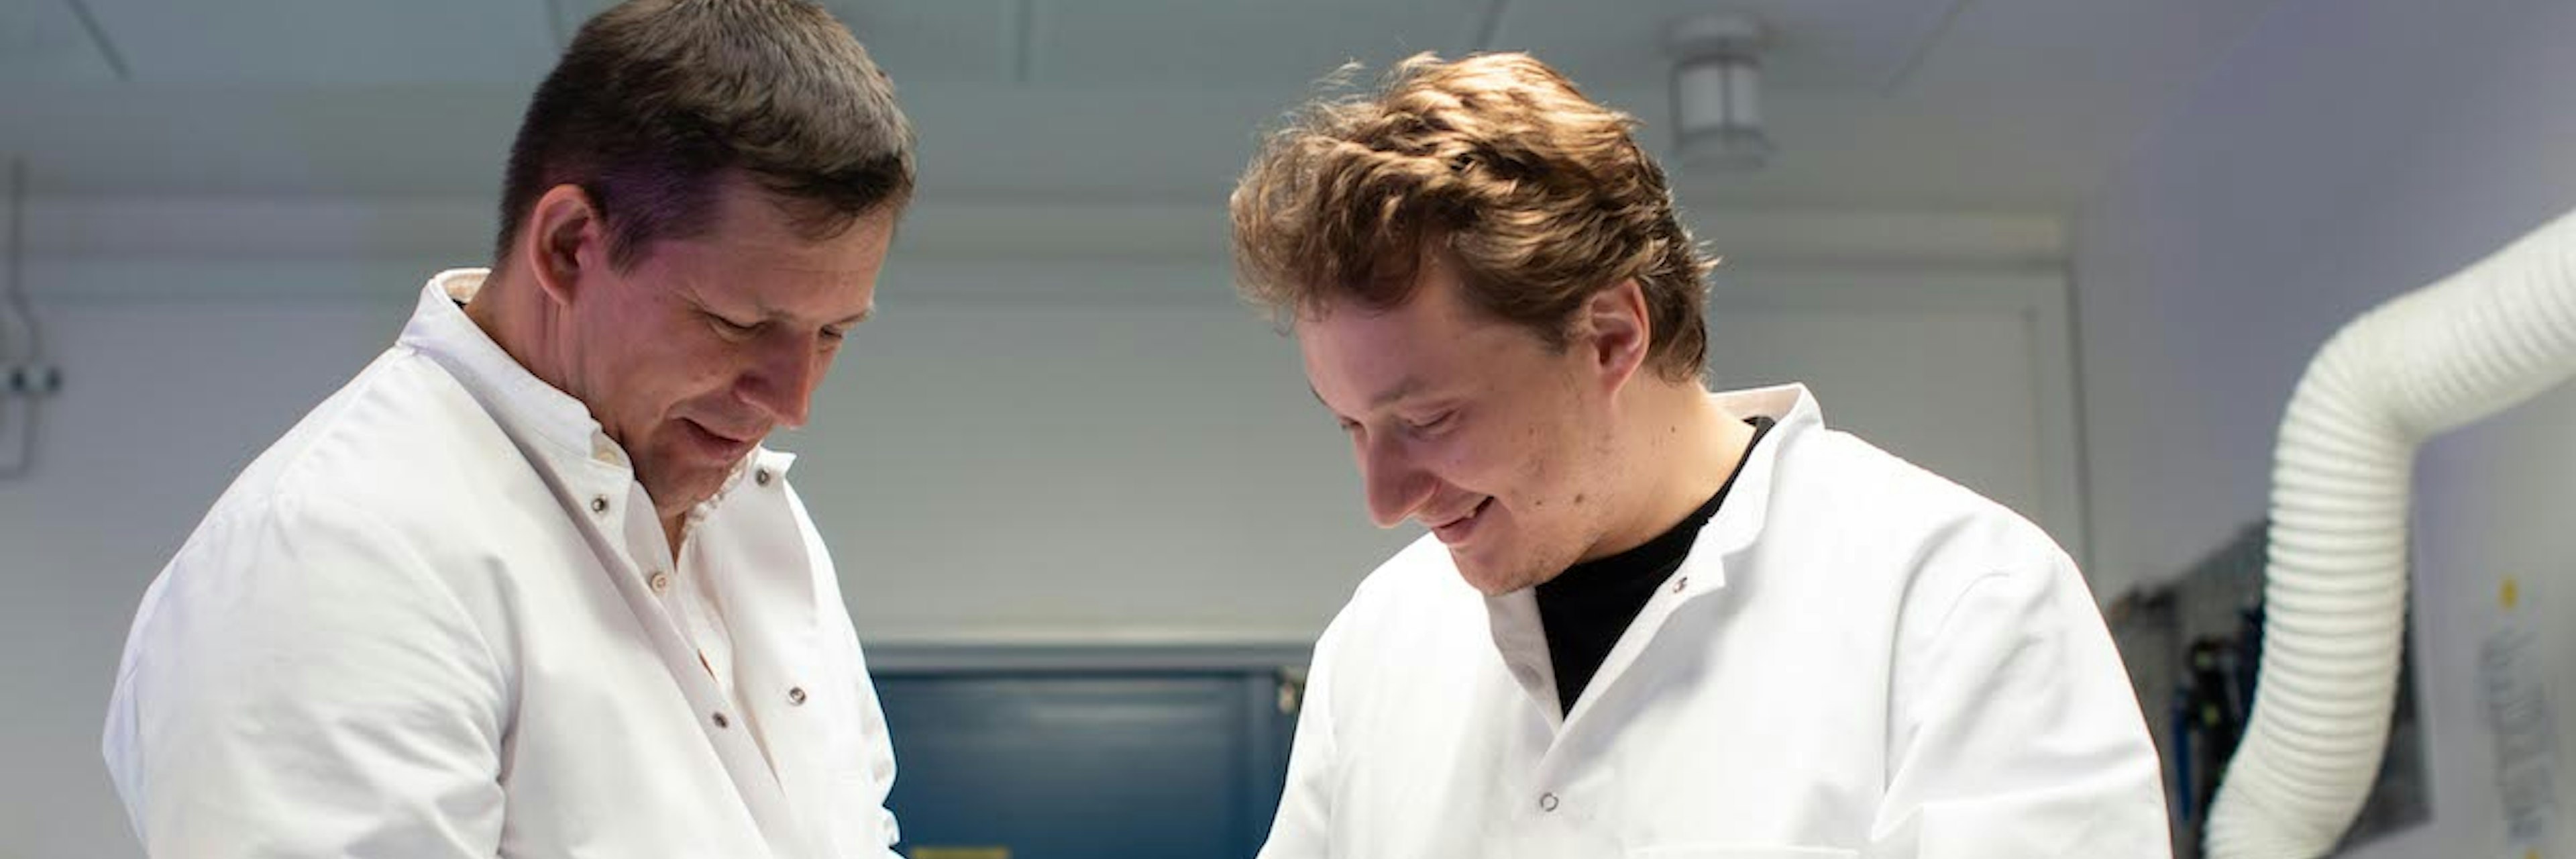 Danish nanotechnology startup ATLANT 3D's founders